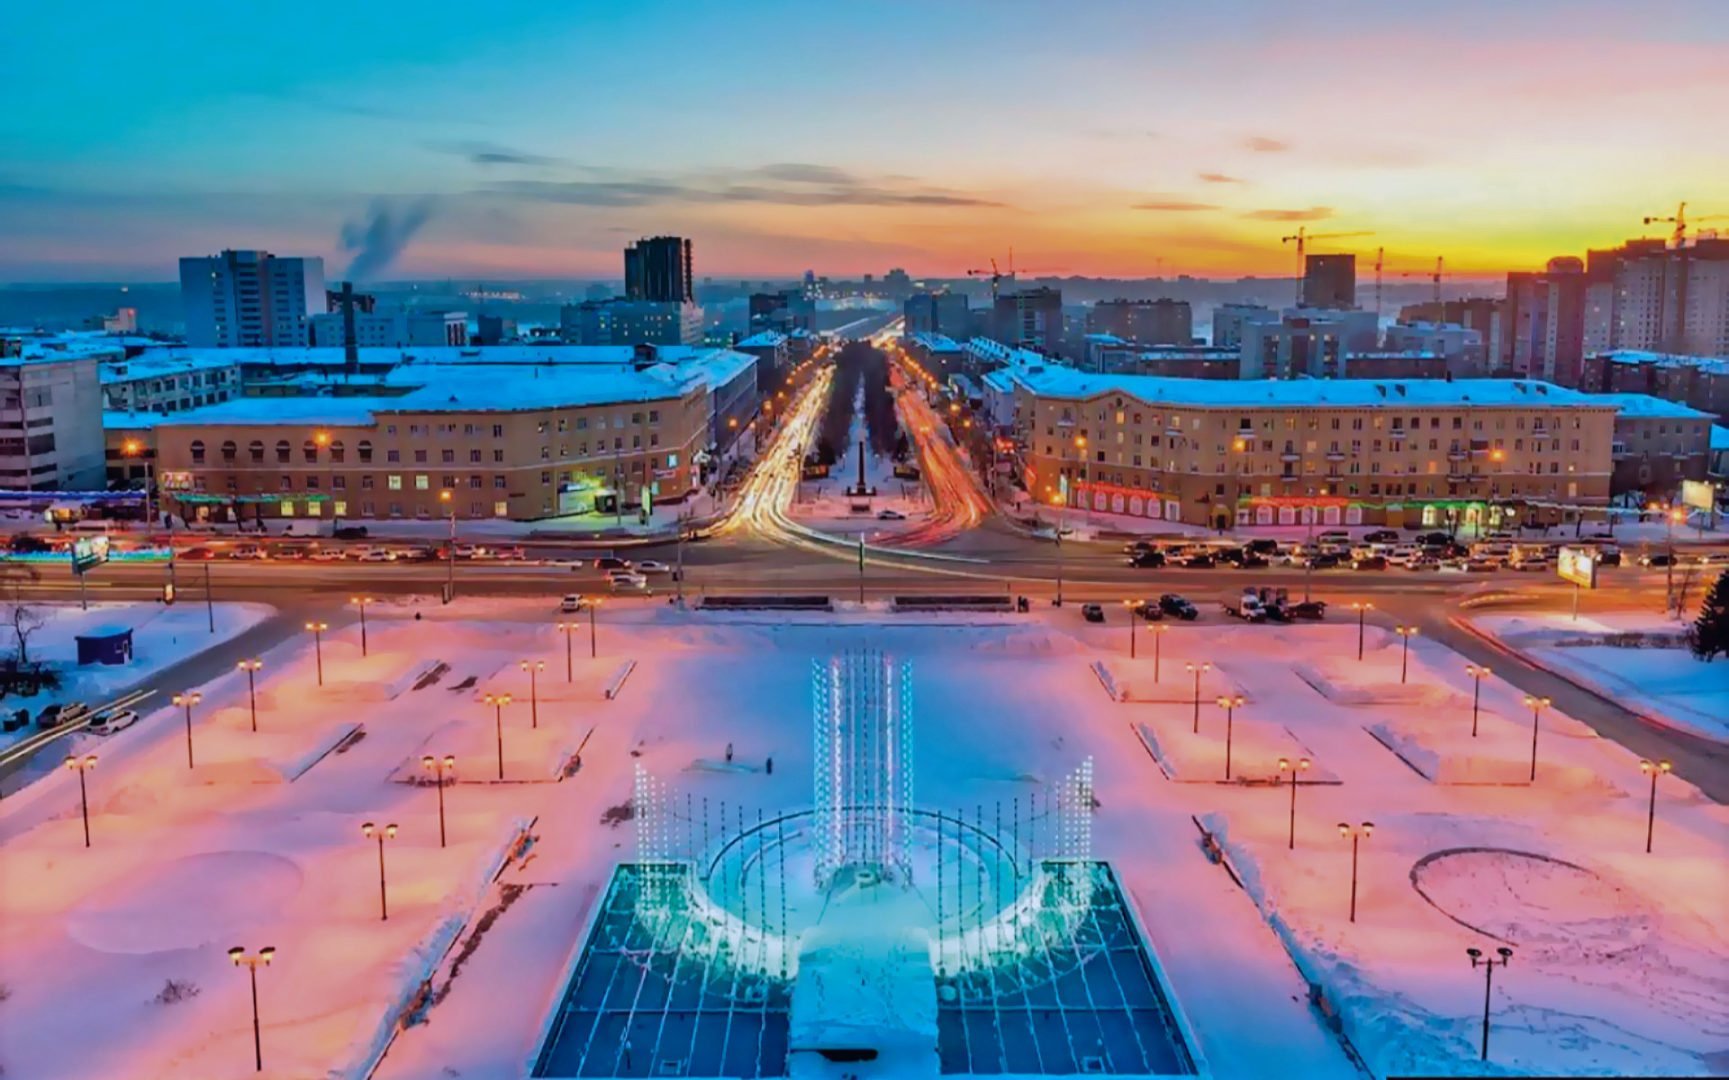 Как называется город в сибири. Площадь Пименова Новосибирск. ГПНТБ Новосибирск зимой. Новосибирск столица Сибири. Площадь Пименова Новосибирск зима.